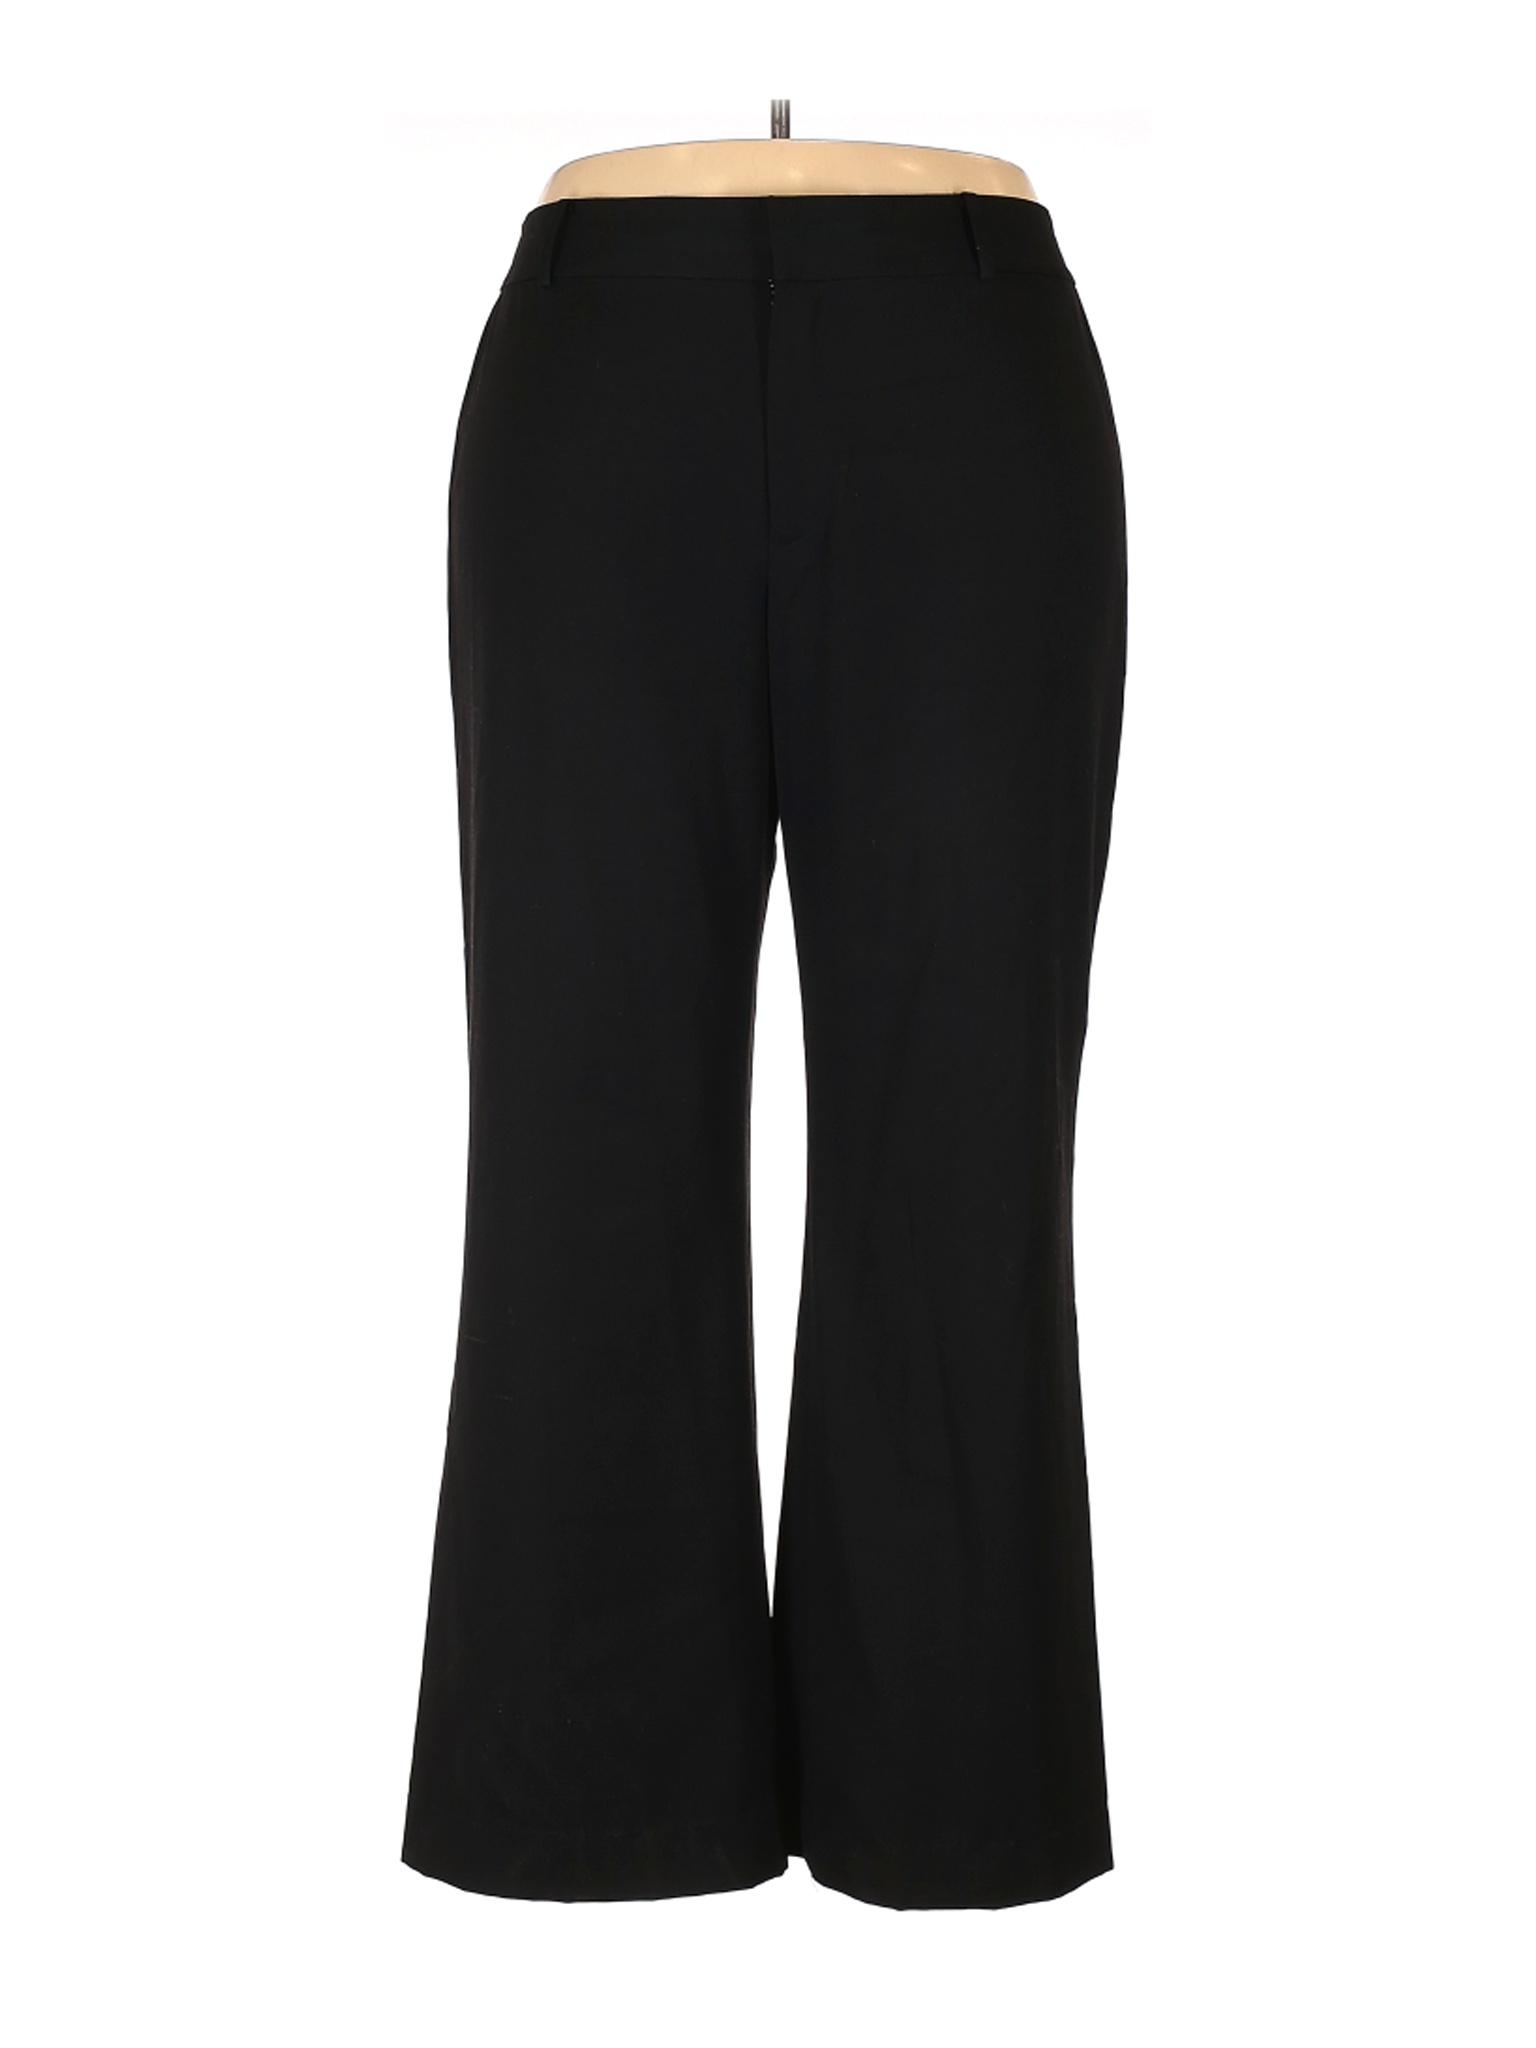 Lauren by Ralph Lauren Women Black Dress Pants 16 | eBay